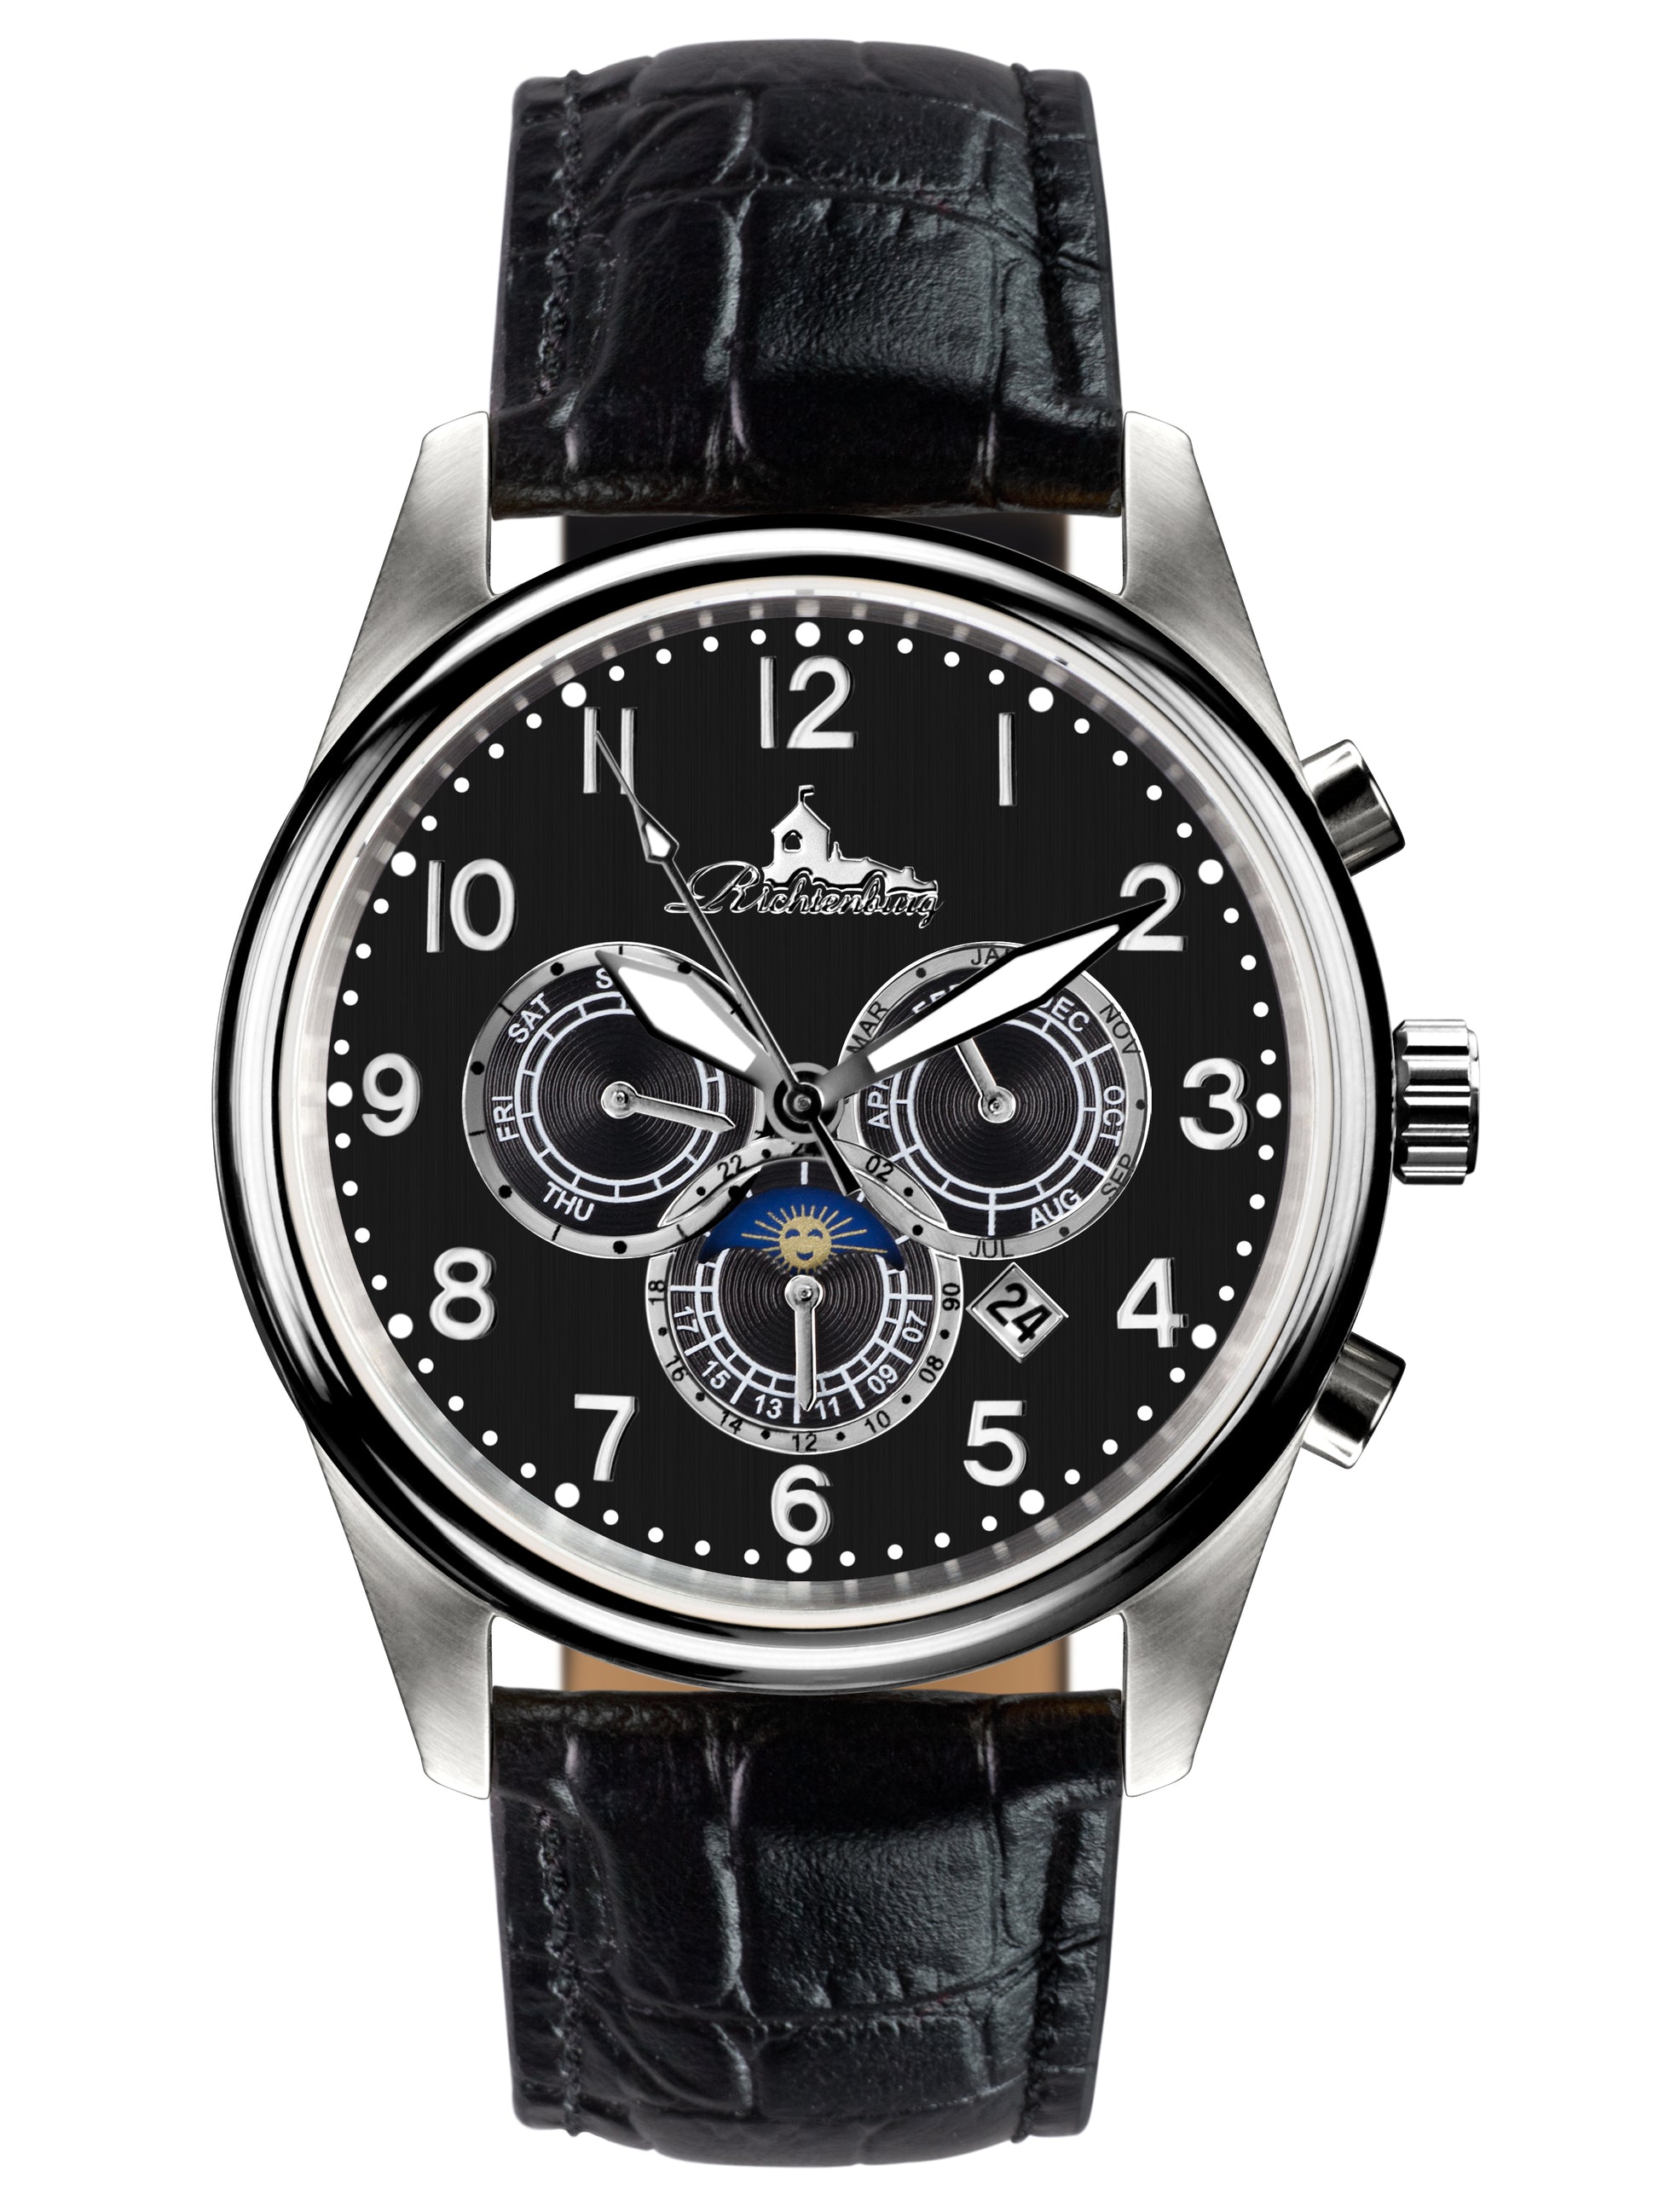 Automatic watches — Athen — Richtenburg — black